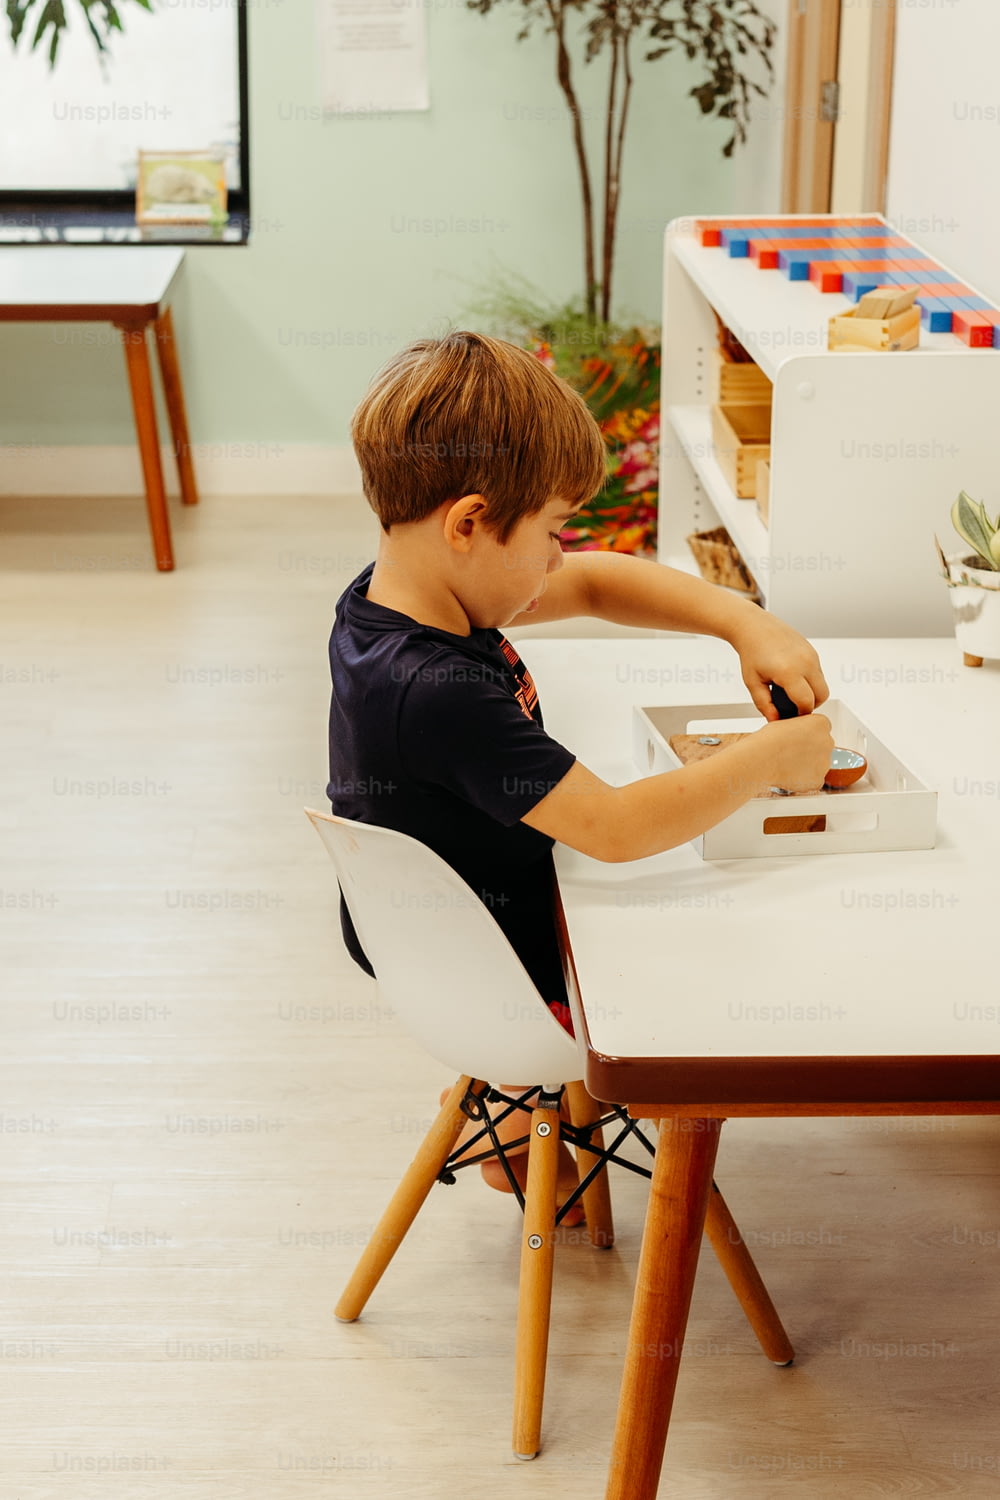 하얀 의�자가 있는 하얀 탁자에 앉아 있는 어린 소년